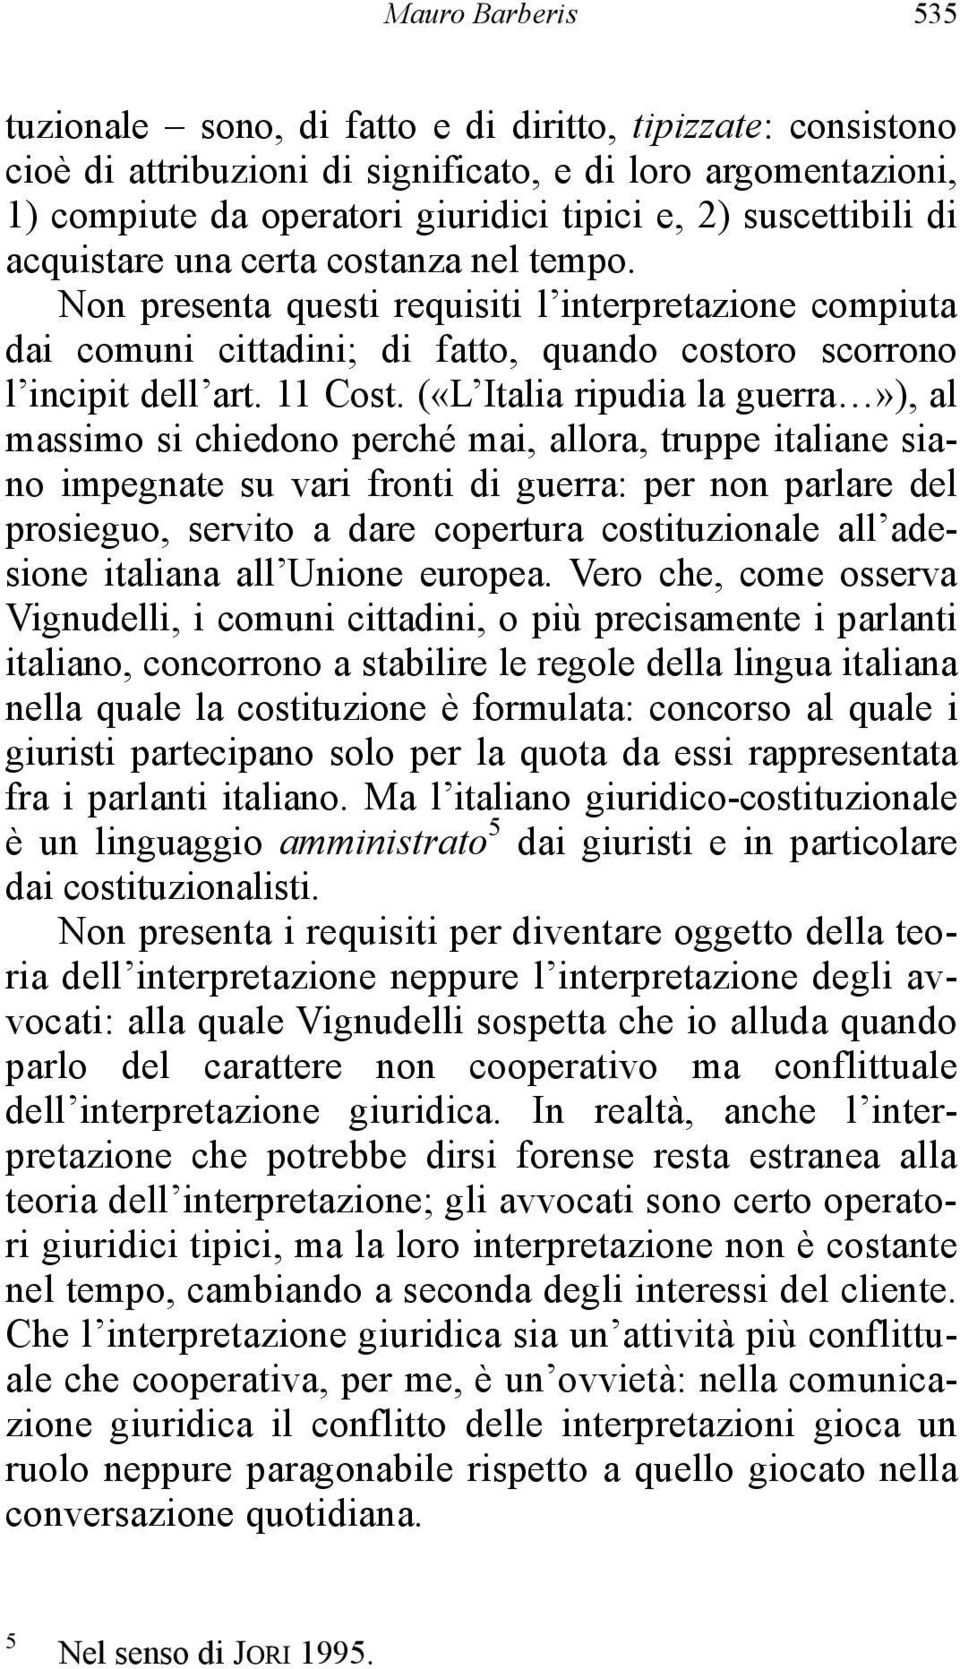 («L Italia ripudia la guerra»), al massimo si chiedono perché mai, allora, truppe italiane siano impegnate su vari fronti di guerra: per non parlare del prosieguo, servito a dare copertura